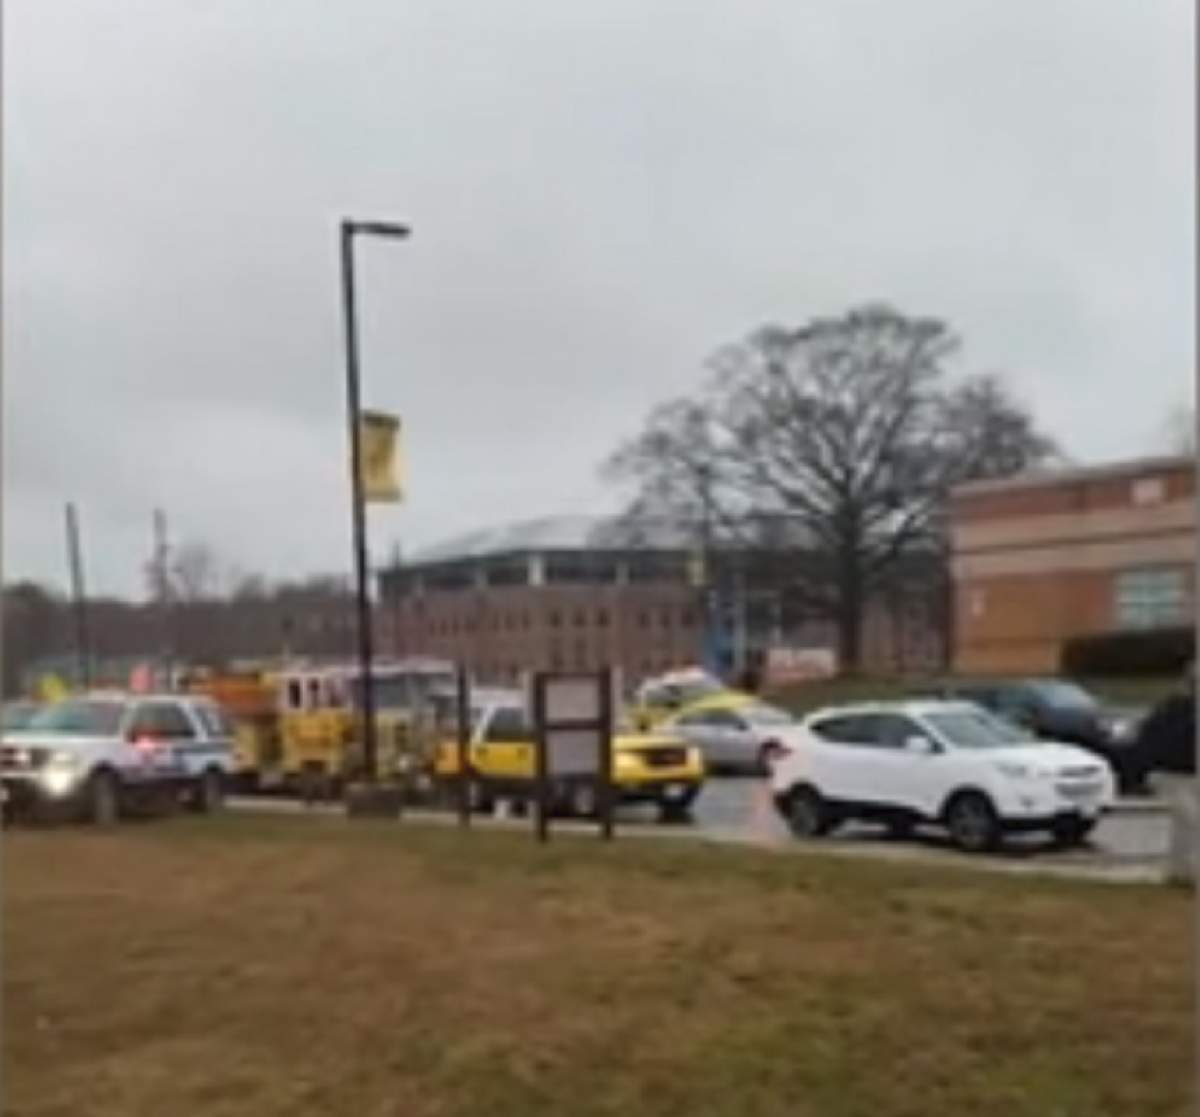 VIDEO / Atac armat într-o şcoală! O persoană a murit, iar alte 7 sunt rănite